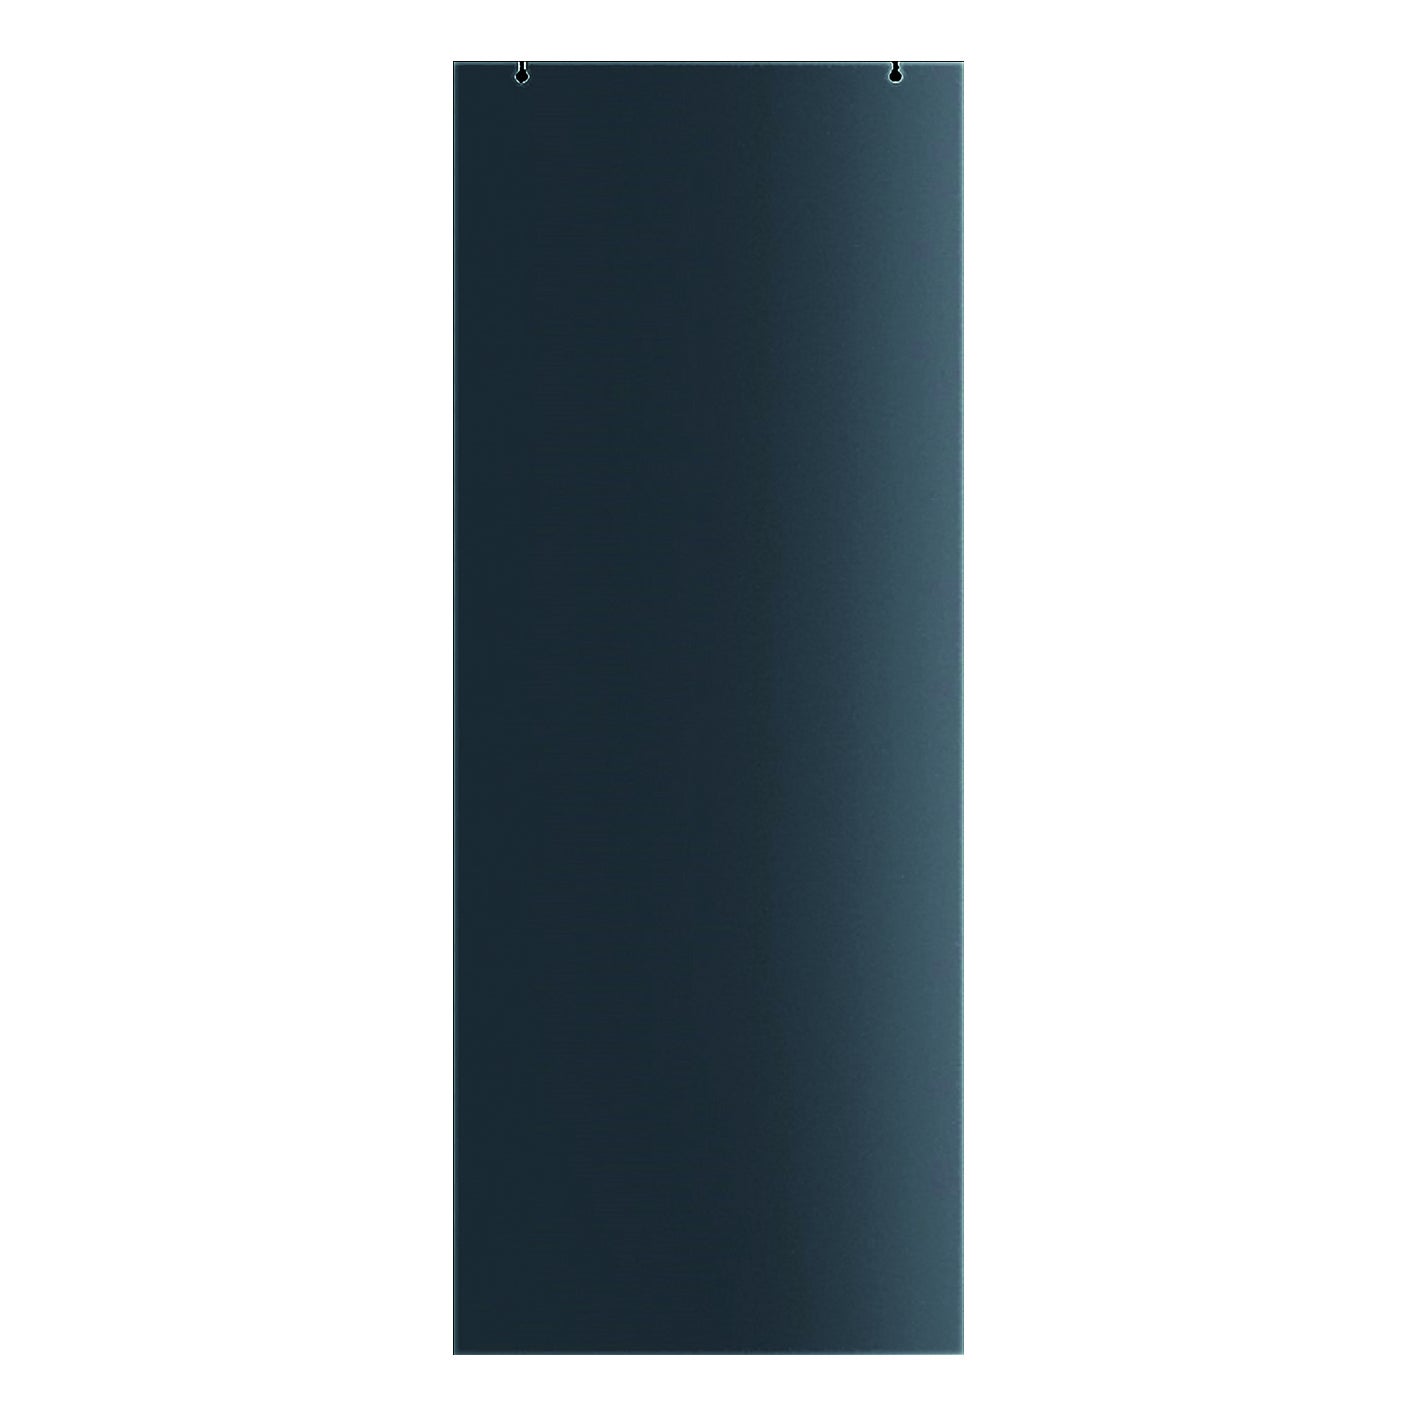 Porta scorrevole Cristal Satinato Fumé, L 86 x H 215 cm, con binario Alu/ vetro